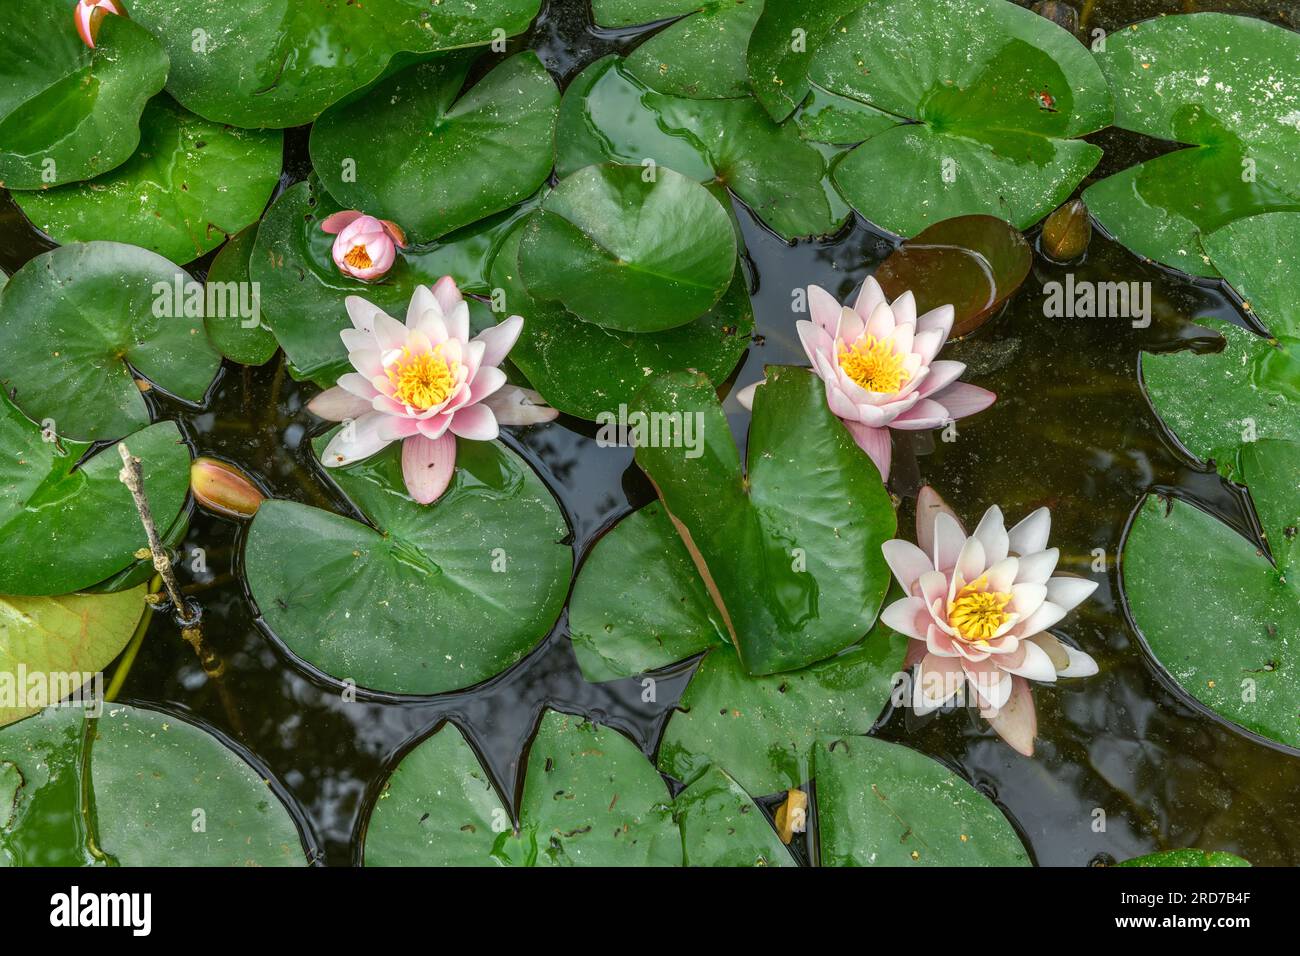 Arrosez les fleurs de nénuphars dans un étang. Bas-Rhin, Collectivite européenne d'Alsace,Grand est, France, Europe. Banque D'Images